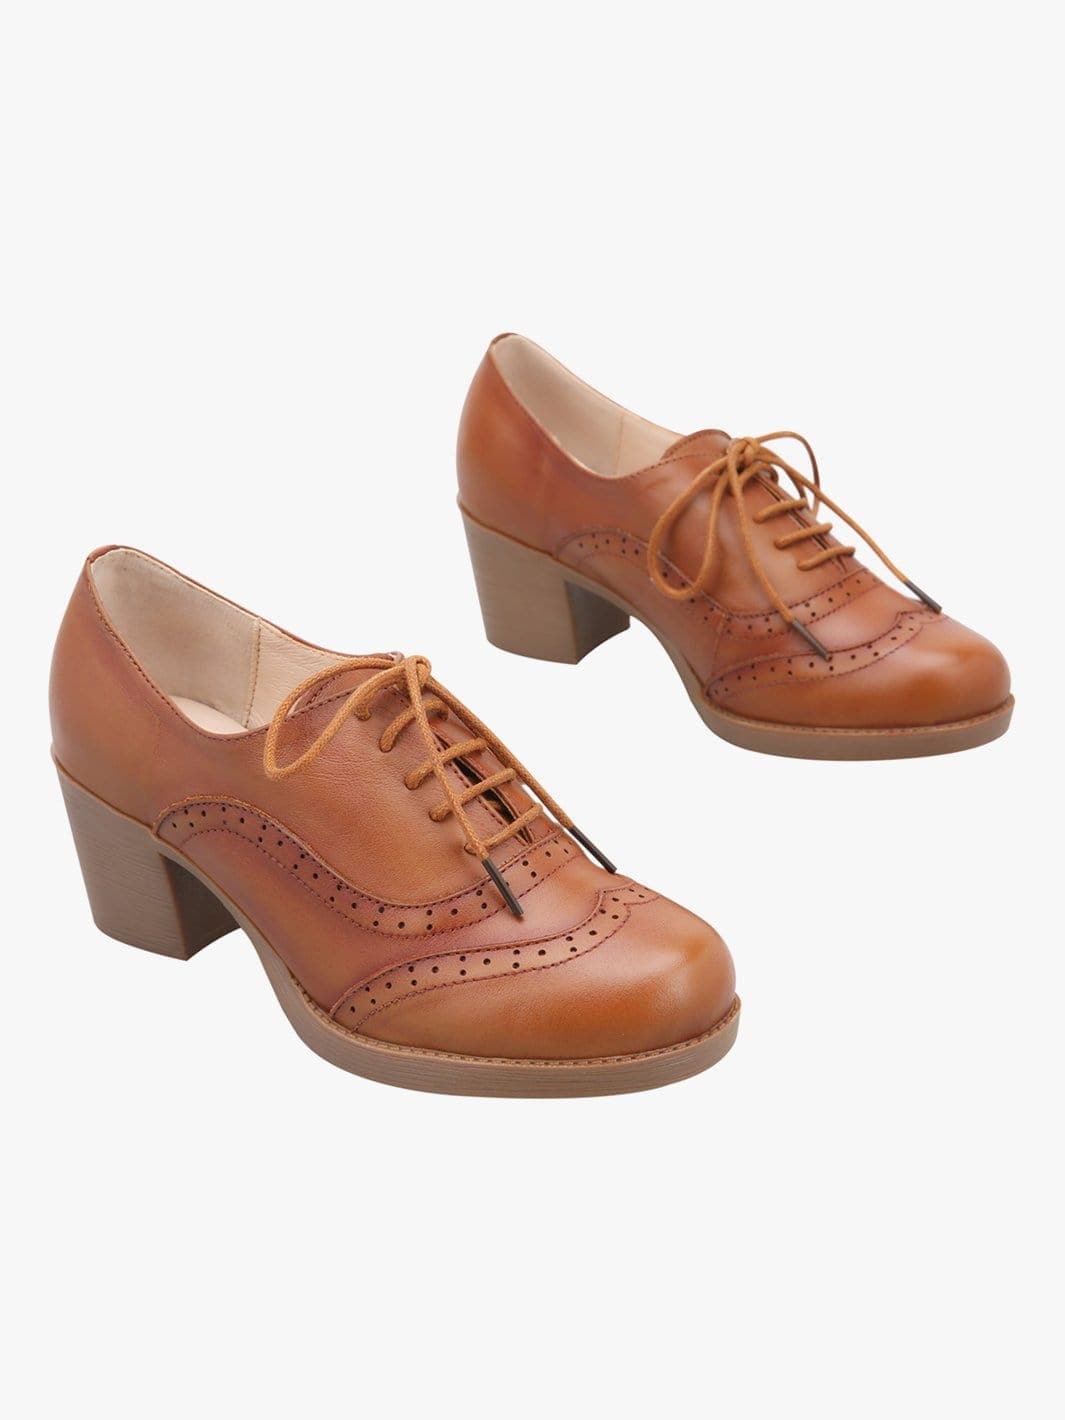 Vintage Leather Shoes for Women - Handmade & Stylish– Ecosusi